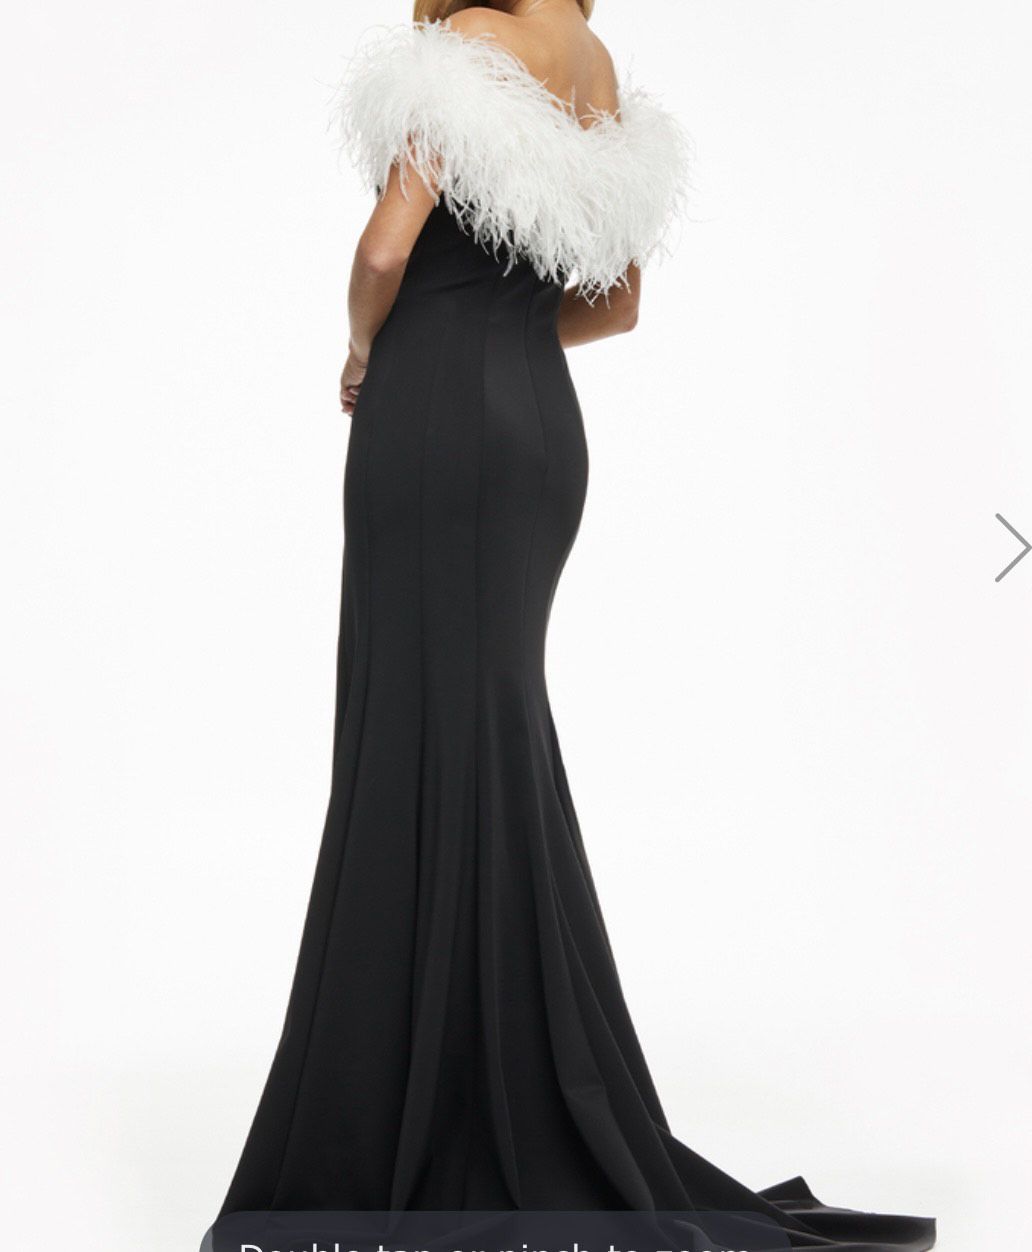 Ashley Lauren Size 0 Prom Off The Shoulder Black Side Slit Dress on Queenly